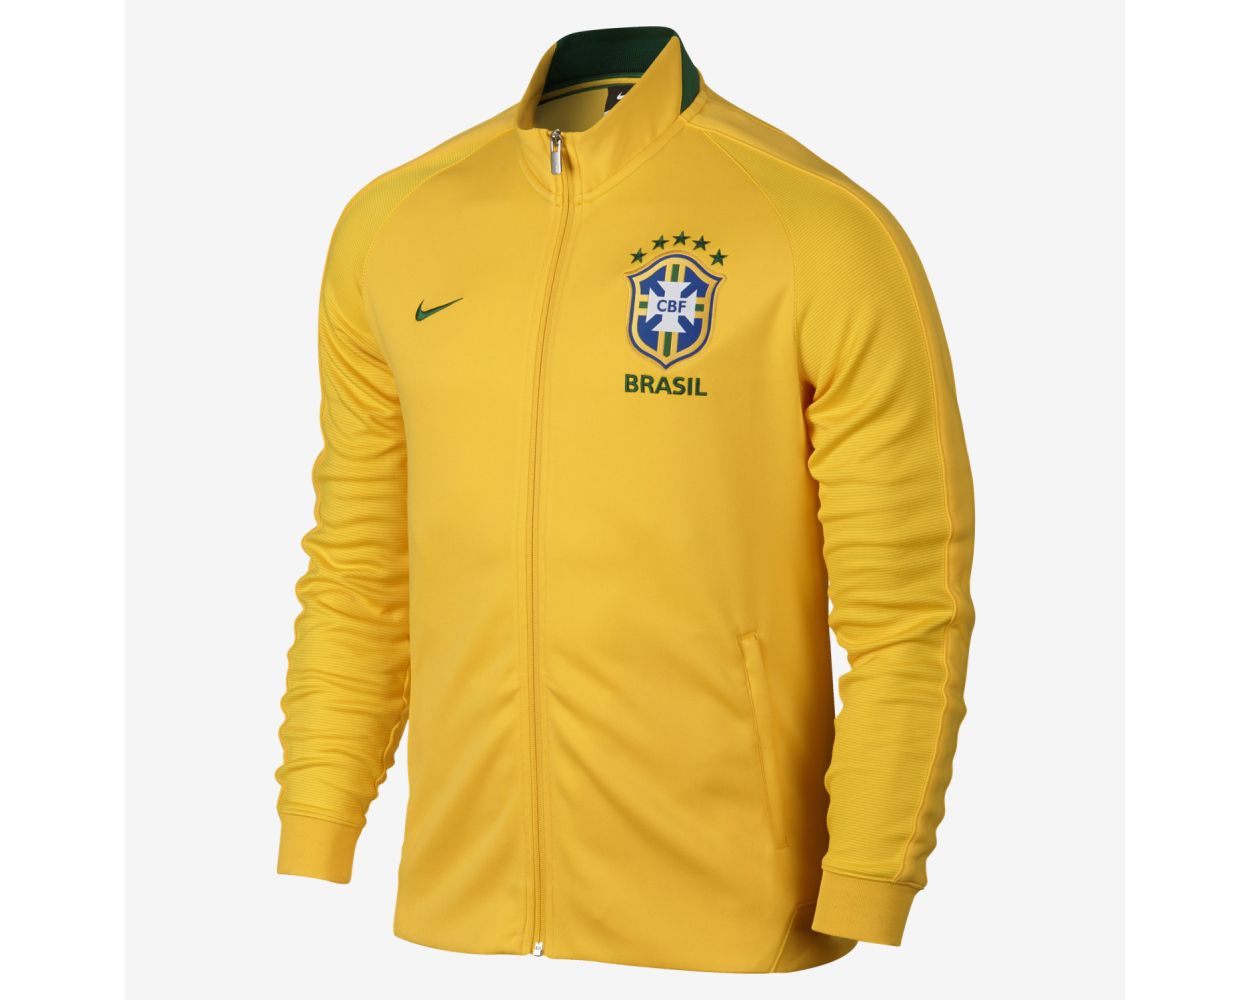 Brazil jacket nike 100% authentic 2014-2015 size medium